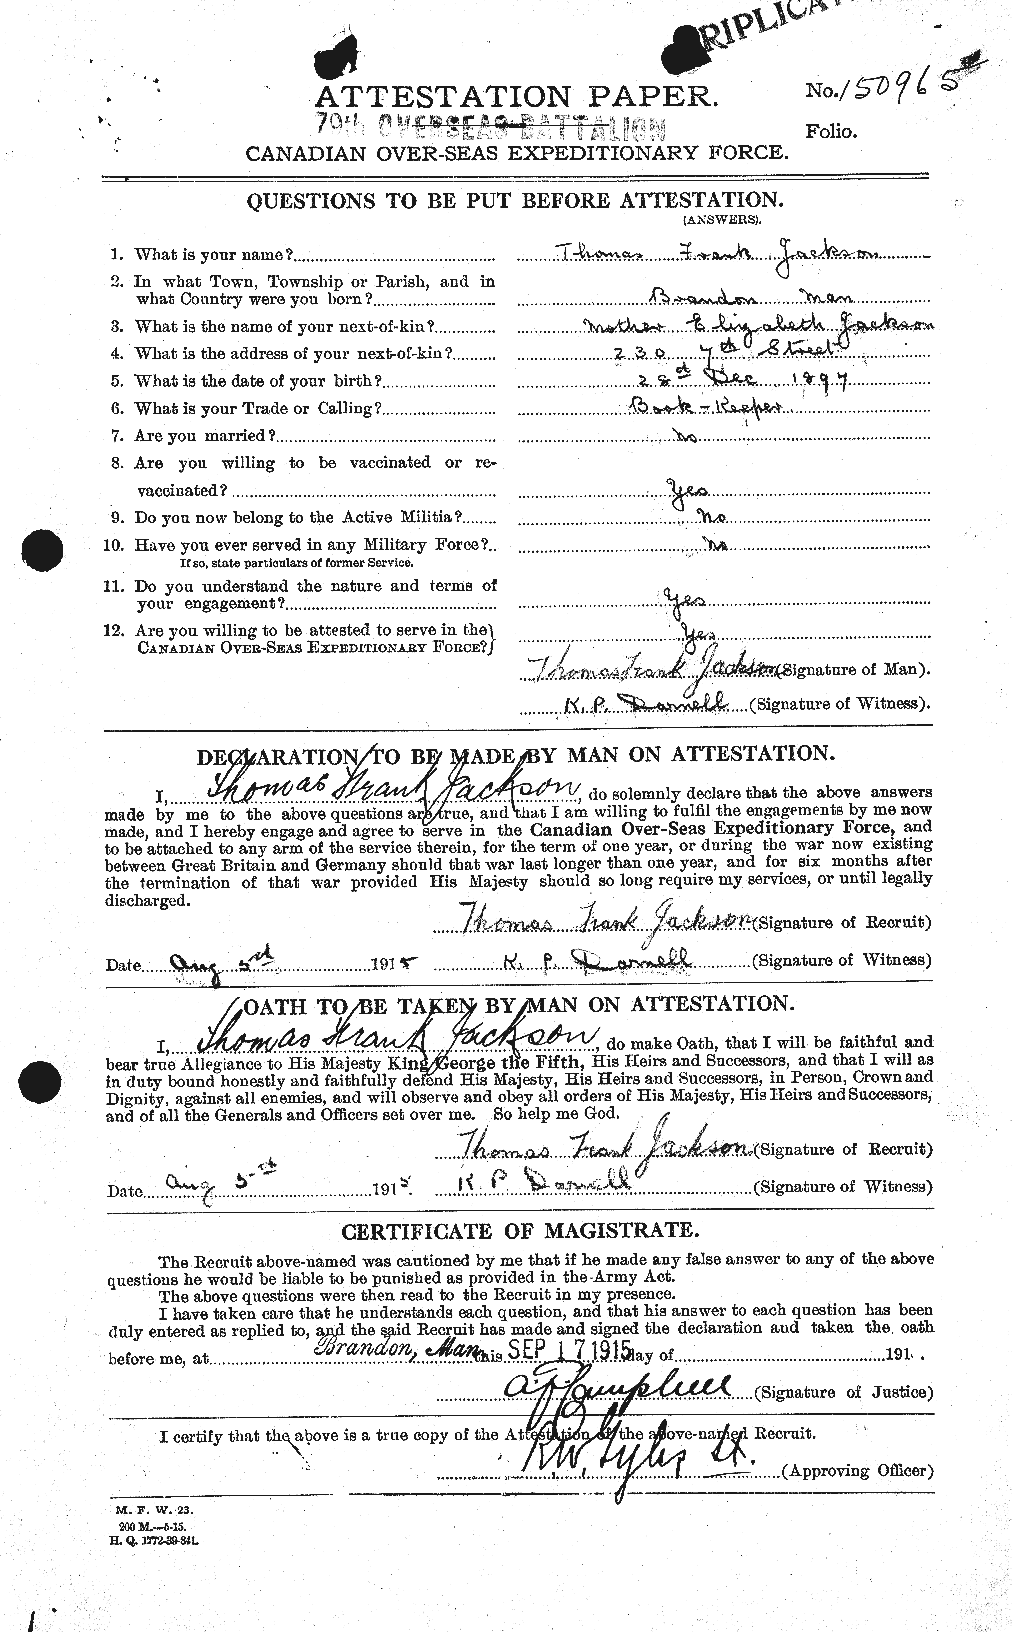 Dossiers du Personnel de la Première Guerre mondiale - CEC 412326a